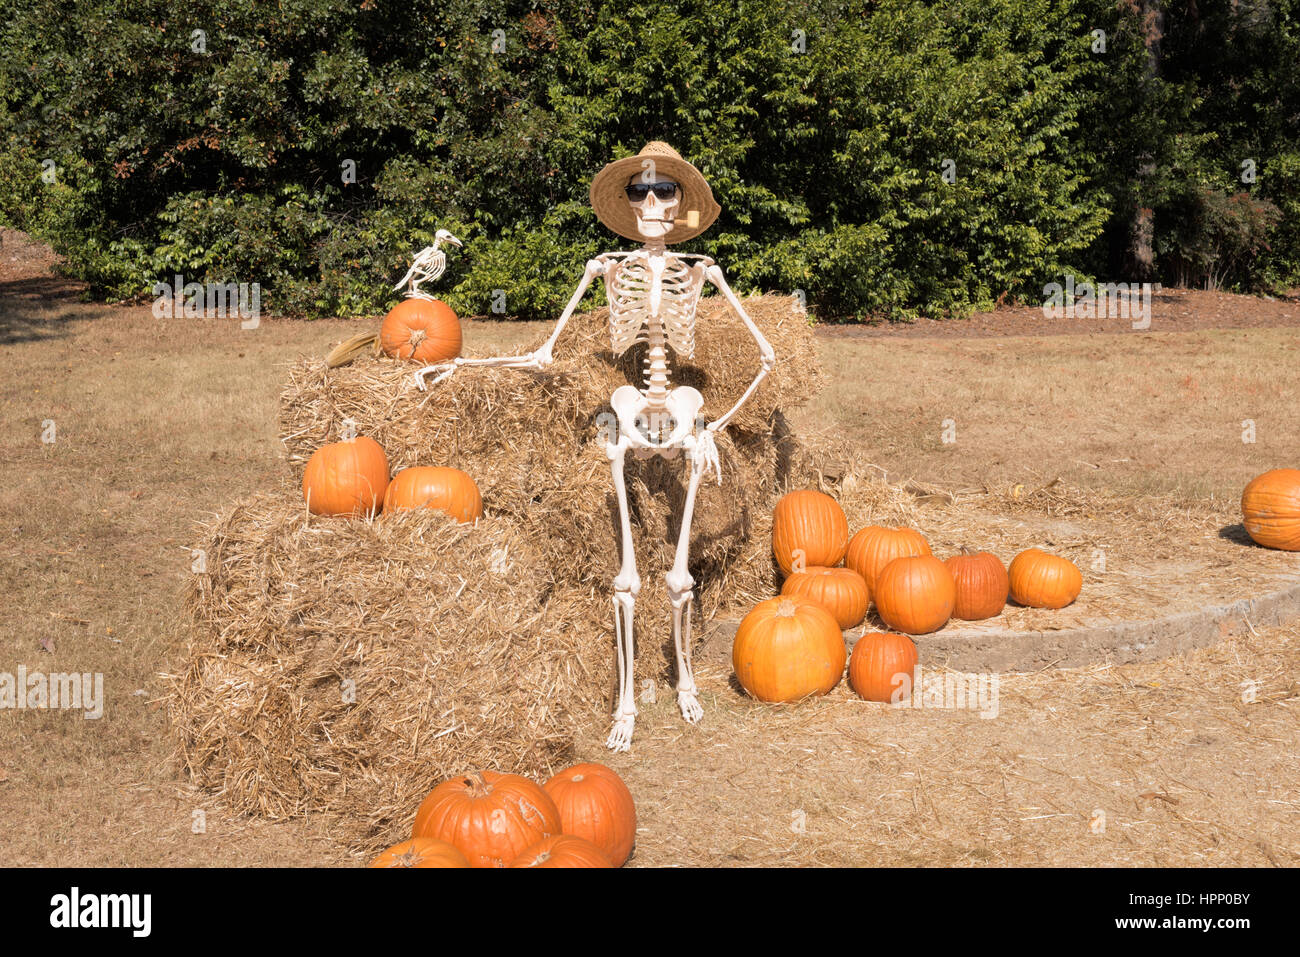 Esqueleto Gardner, muestra con orgullo su Pumpkin Patch cosecha para una fiesta de Halloween embrujada. Foto de stock